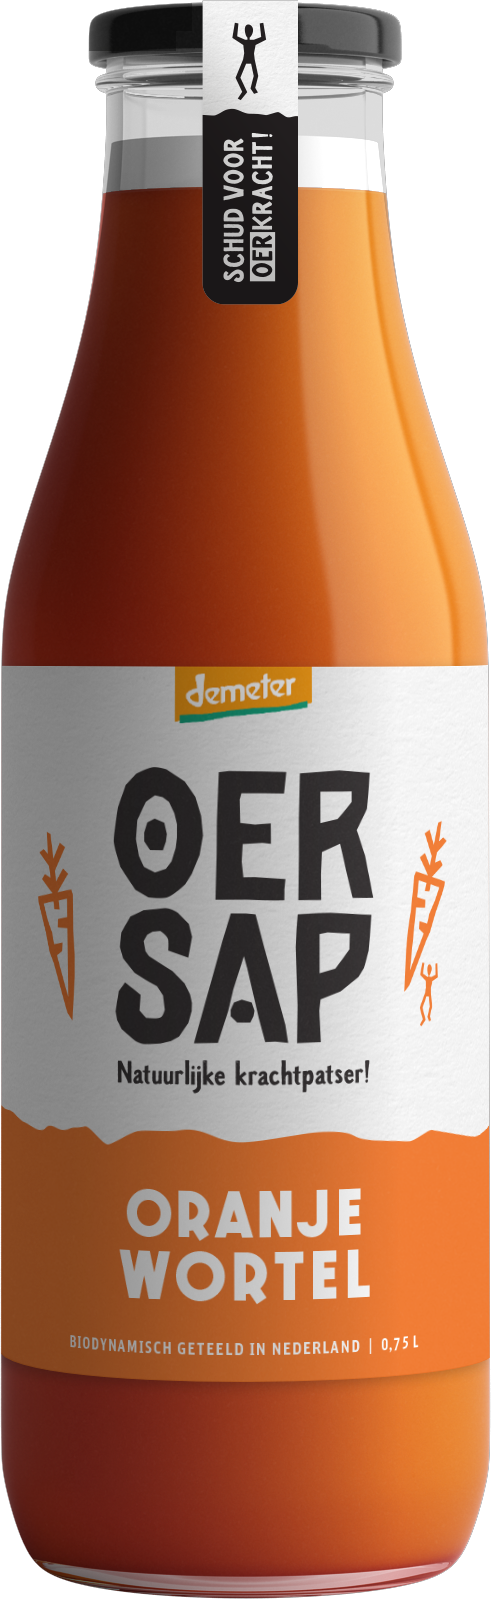 Bottle of orange carrot vegetable drink by Oersap